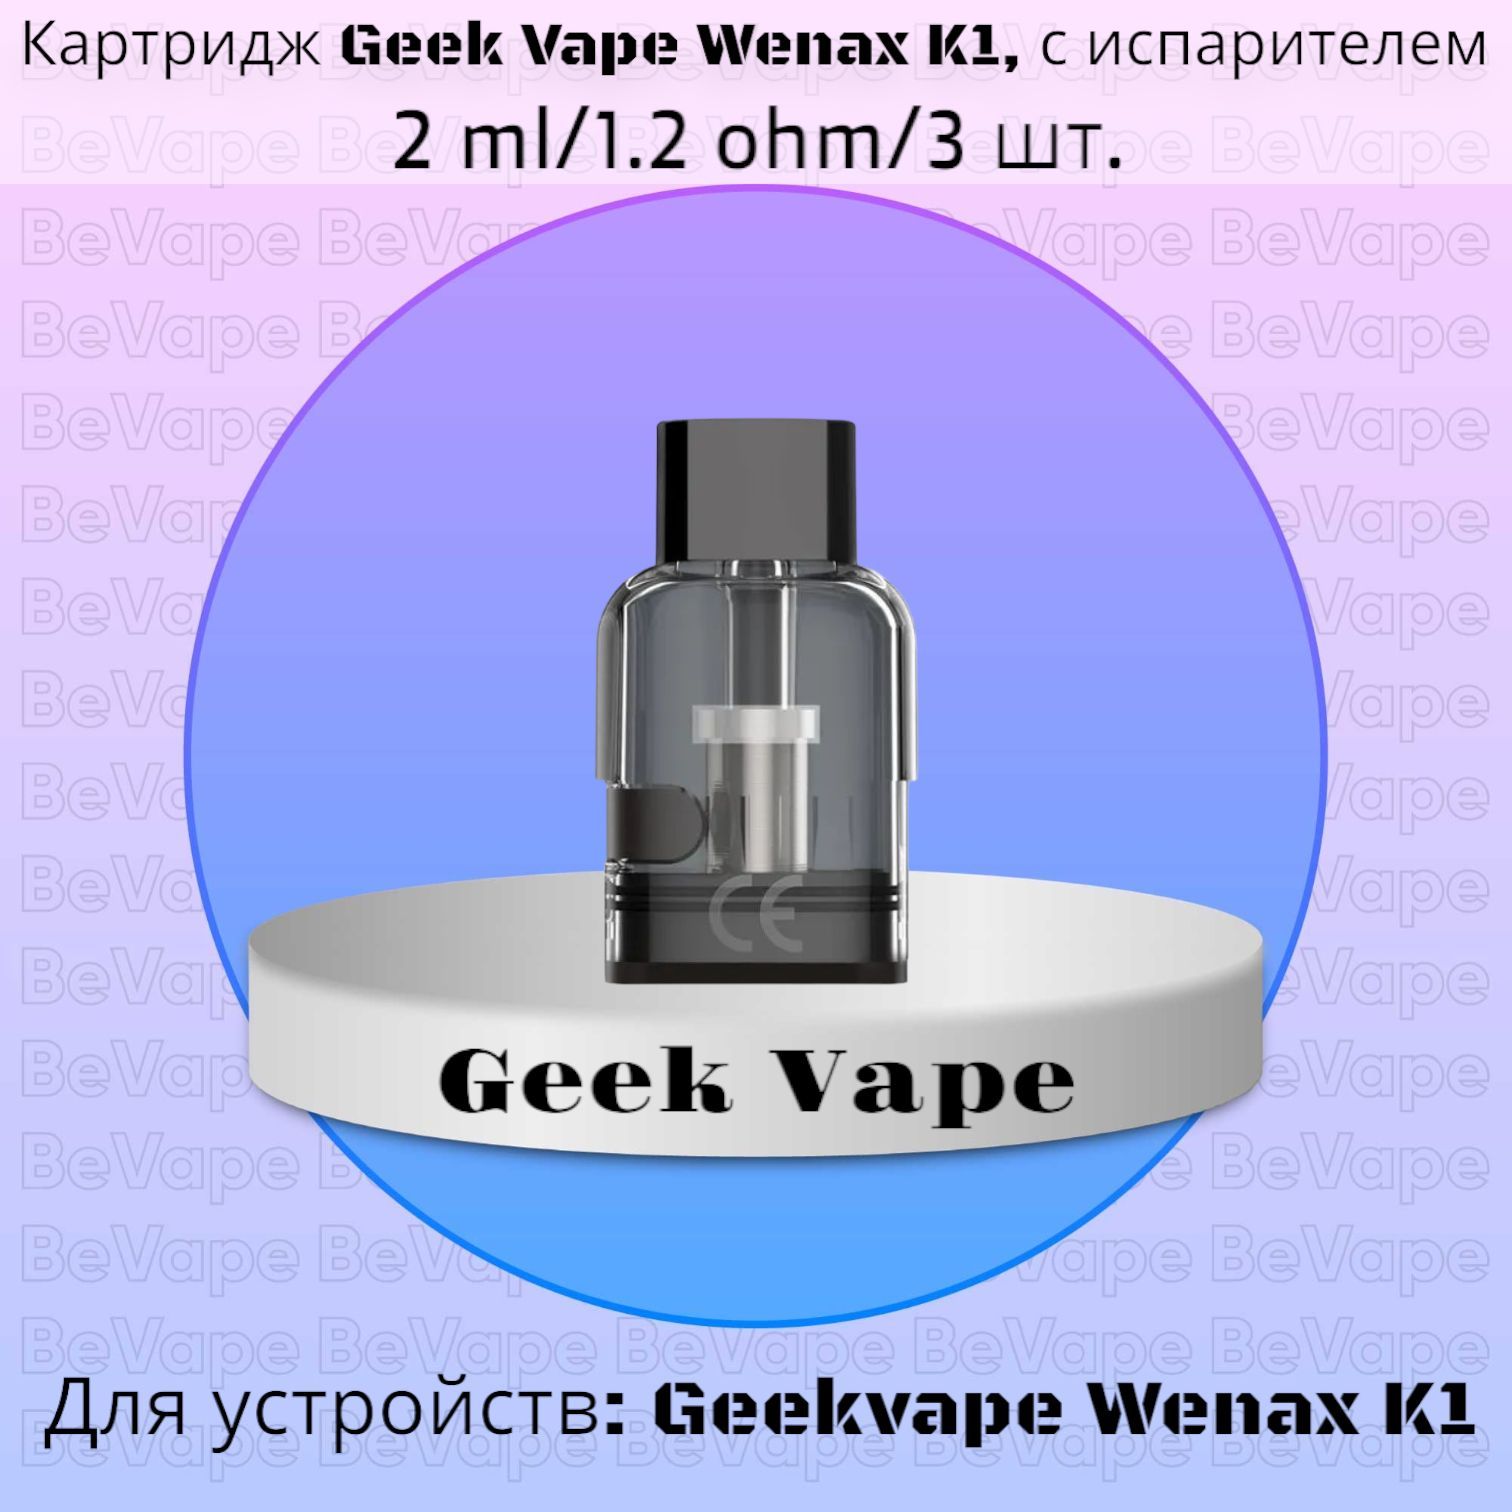 Geekvape wenax картридж купить. GEEKVAPE wenax h1 картридж. GEEKVAPE n30 картридж 1.2. Wenax u картридж. GEEKVAPE wenax k1 картридж купить.